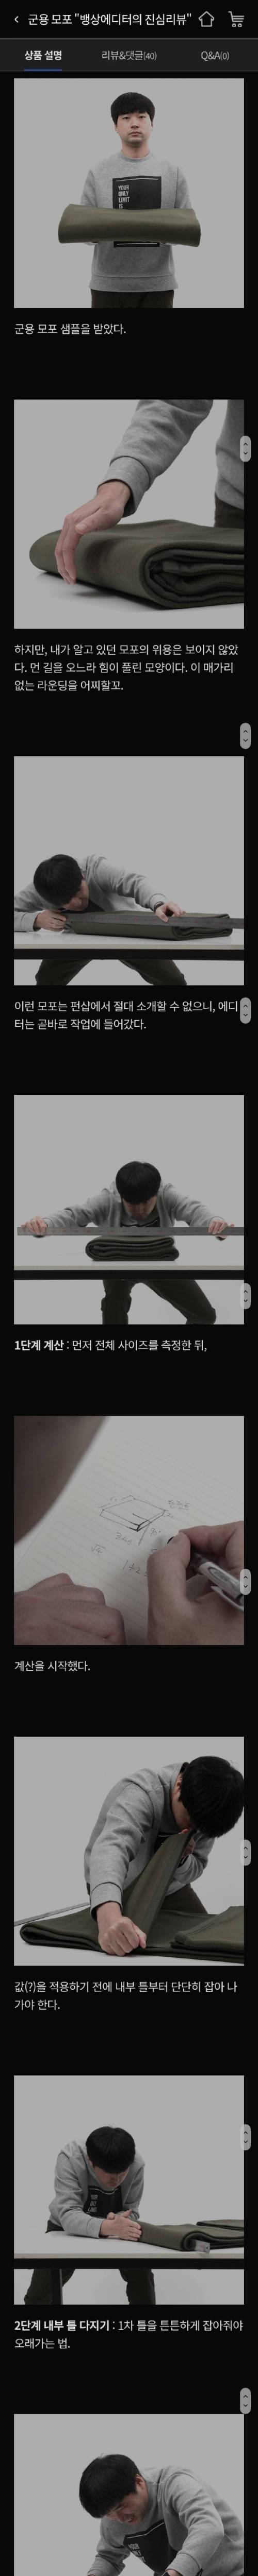 [스압] 대한민국 남성들 설레게하는 상품 소개.jpg